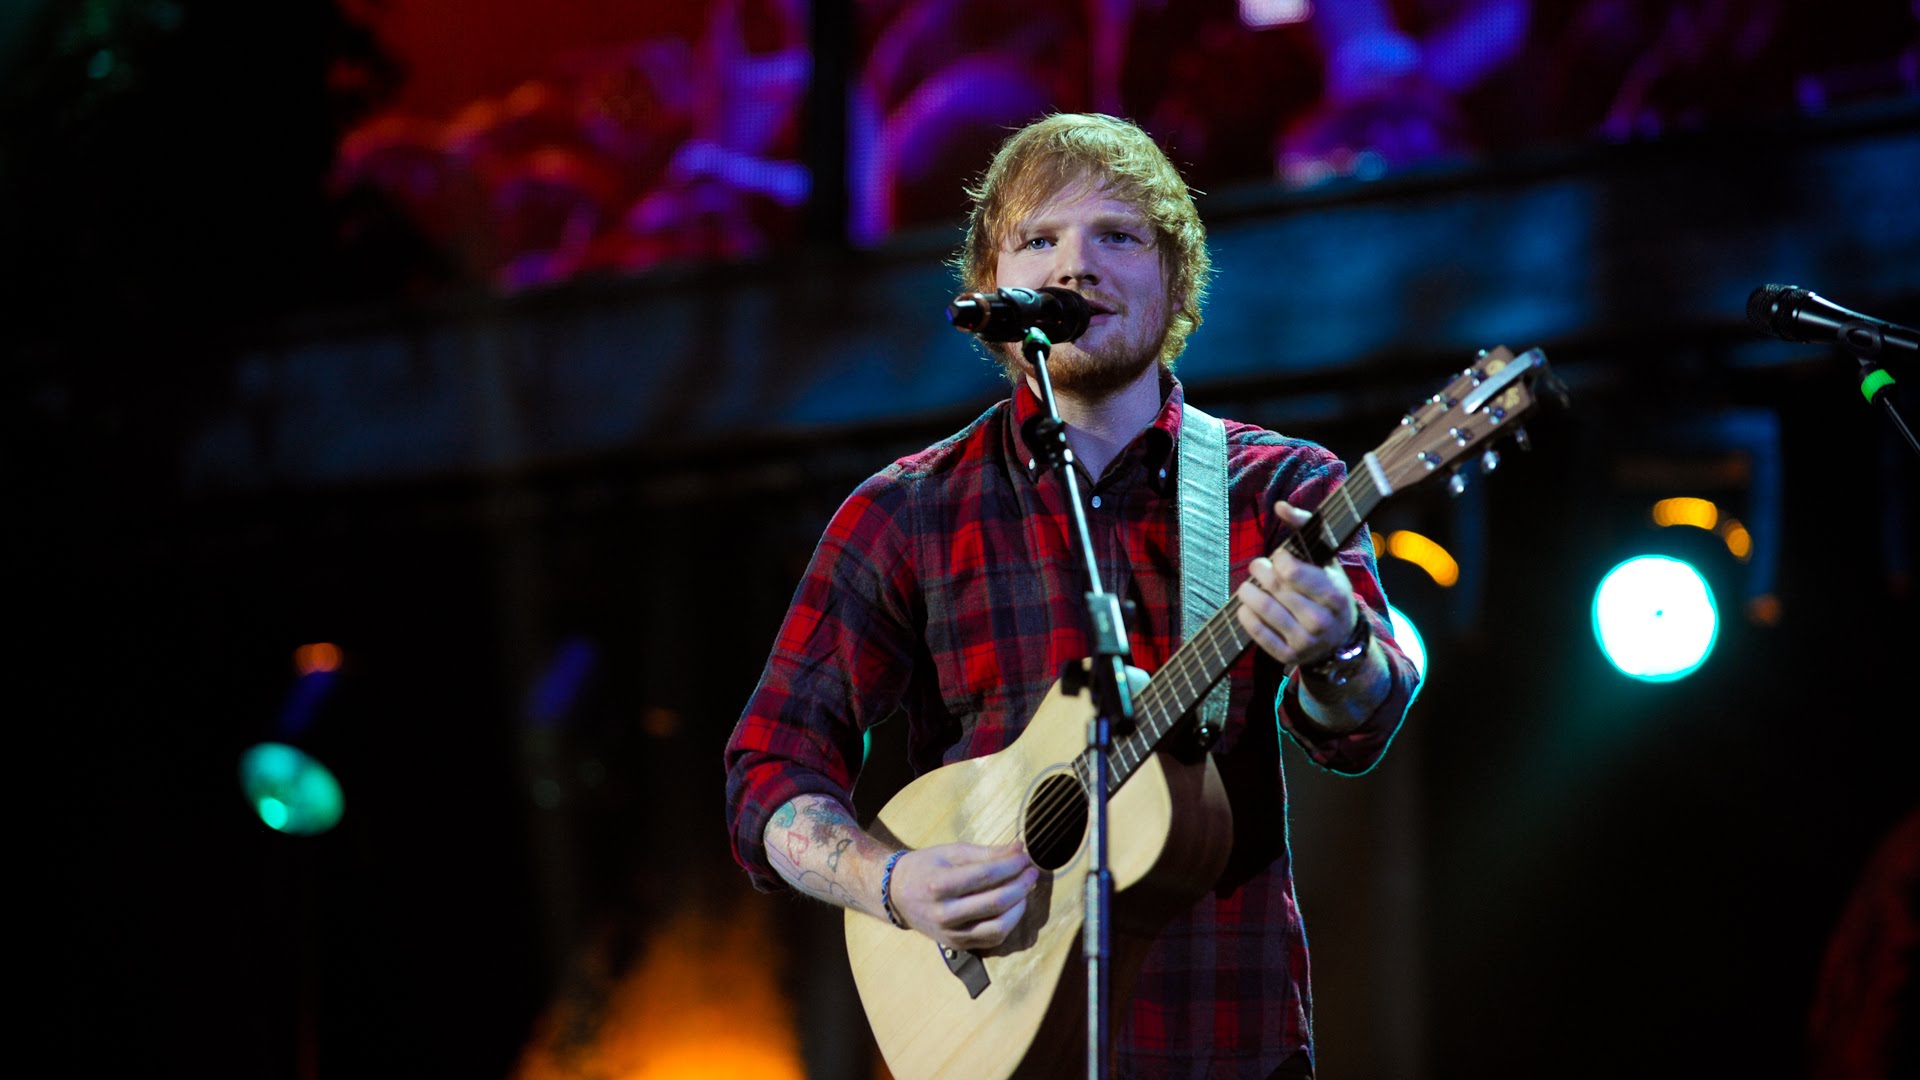 Η Apple αγοράζει τα δικαιώματα του ντοκιμαντέρ του Ed Sheeran